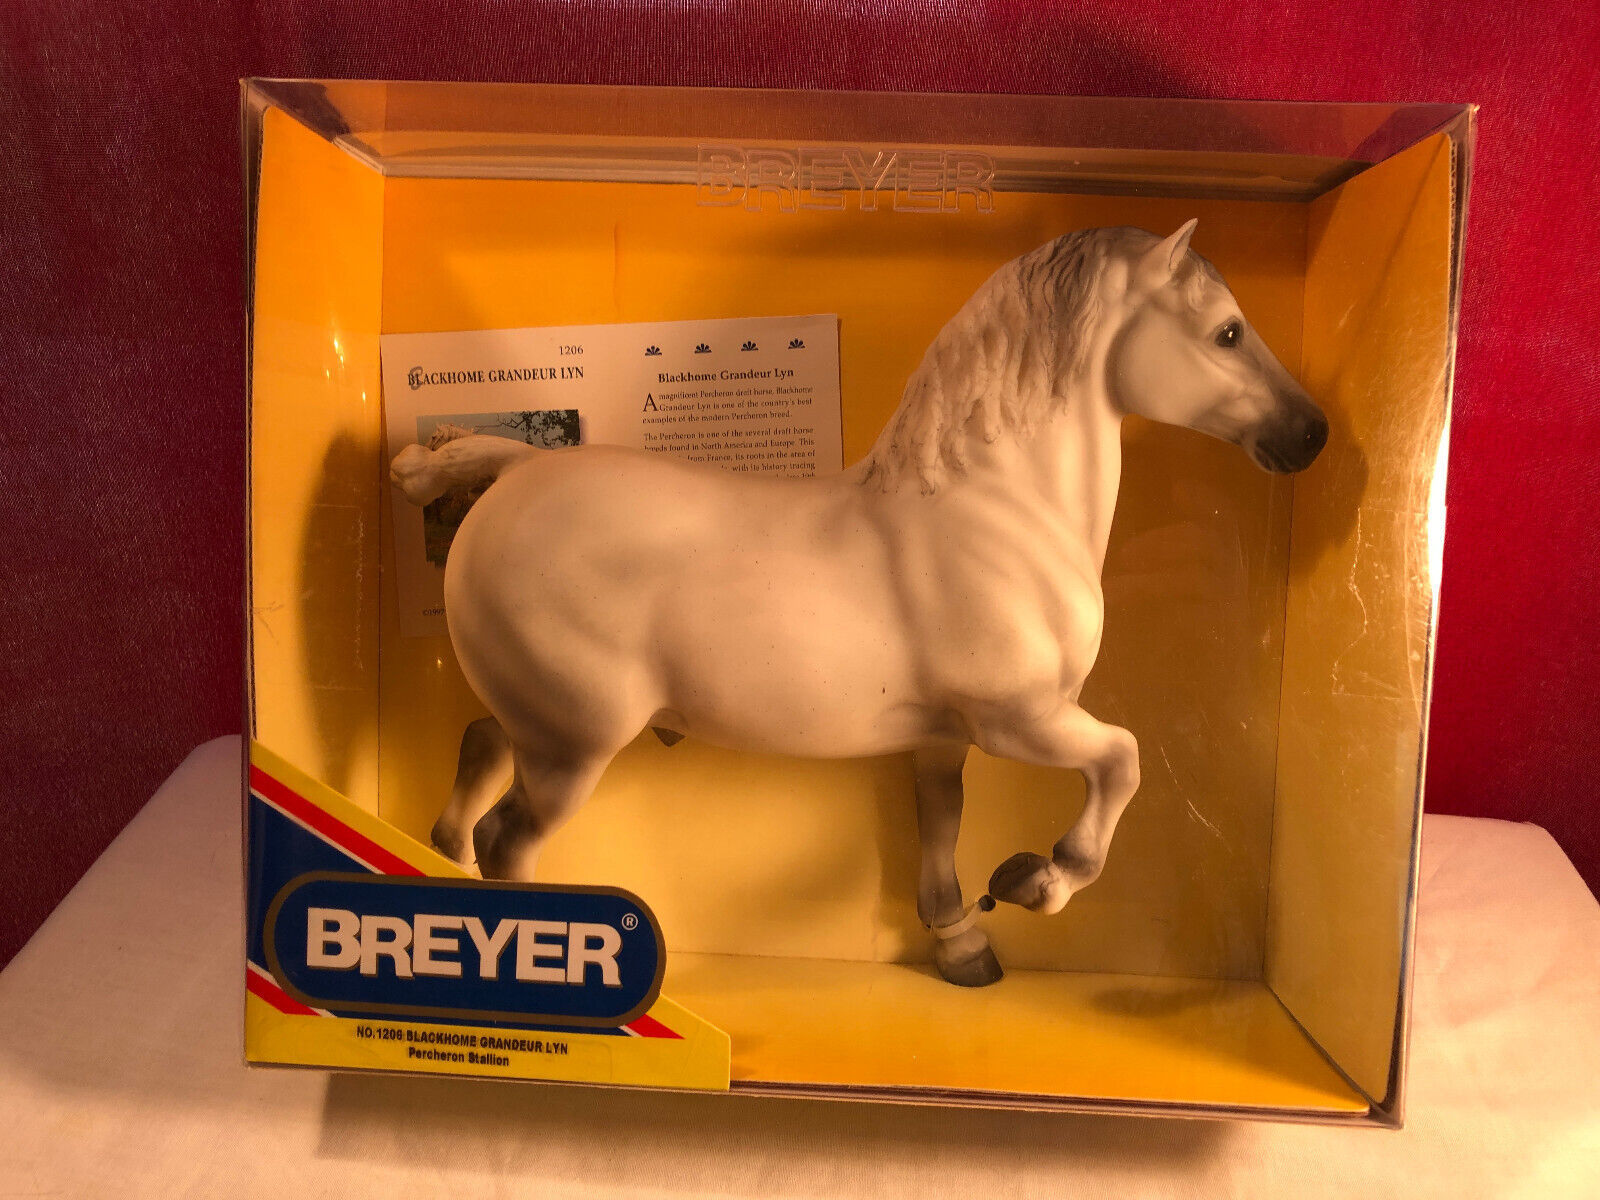 Breyer Blackhome Grandeur Lyn Horse Figure In Original Box - $59.99